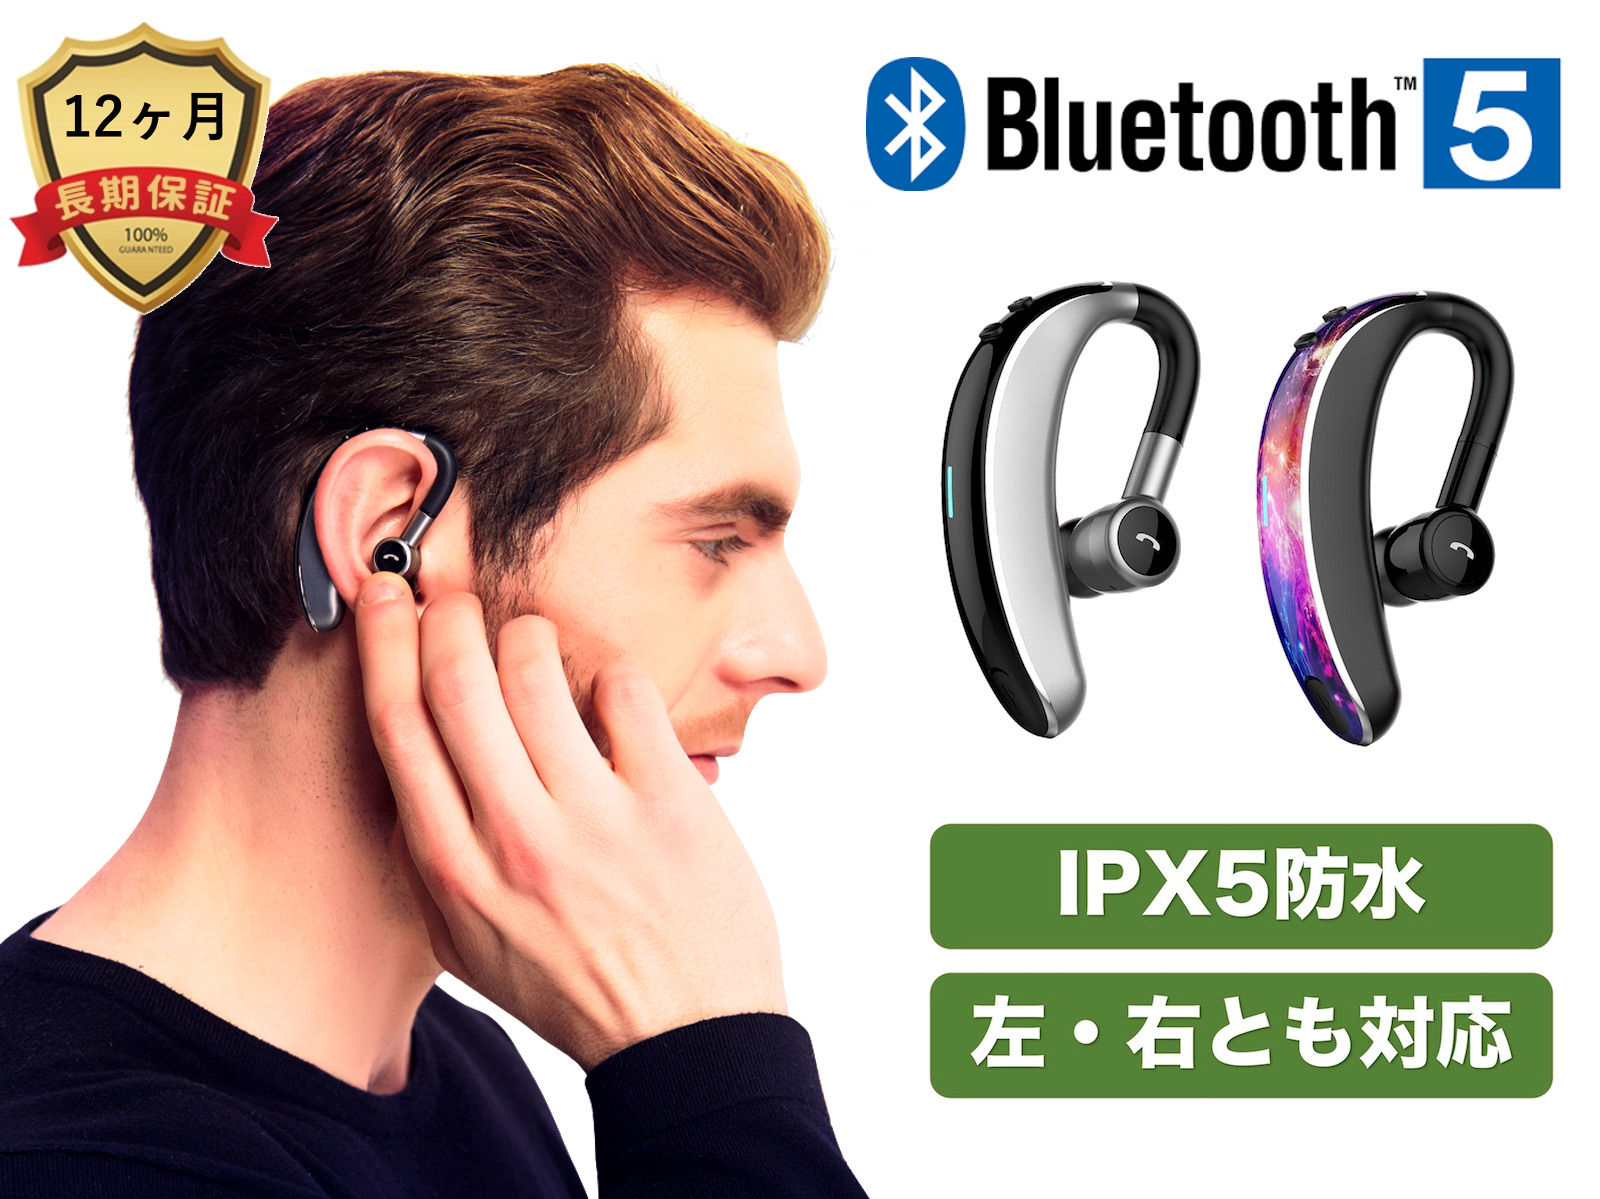 楽天市場 Bluetooth 5 0 Ipx5防水 ワイヤレスイヤホン 左右とも対応 連続時間使用 日本語説明書 日本正規品 ヘッドホン 片耳専用 超軽量 超小型 高音質 マイク内蔵 ブルートゥース ヘッドセット Iphone Android スマホ 対応 送料無料 Coopo Cp V7 Coopo Japan 楽天